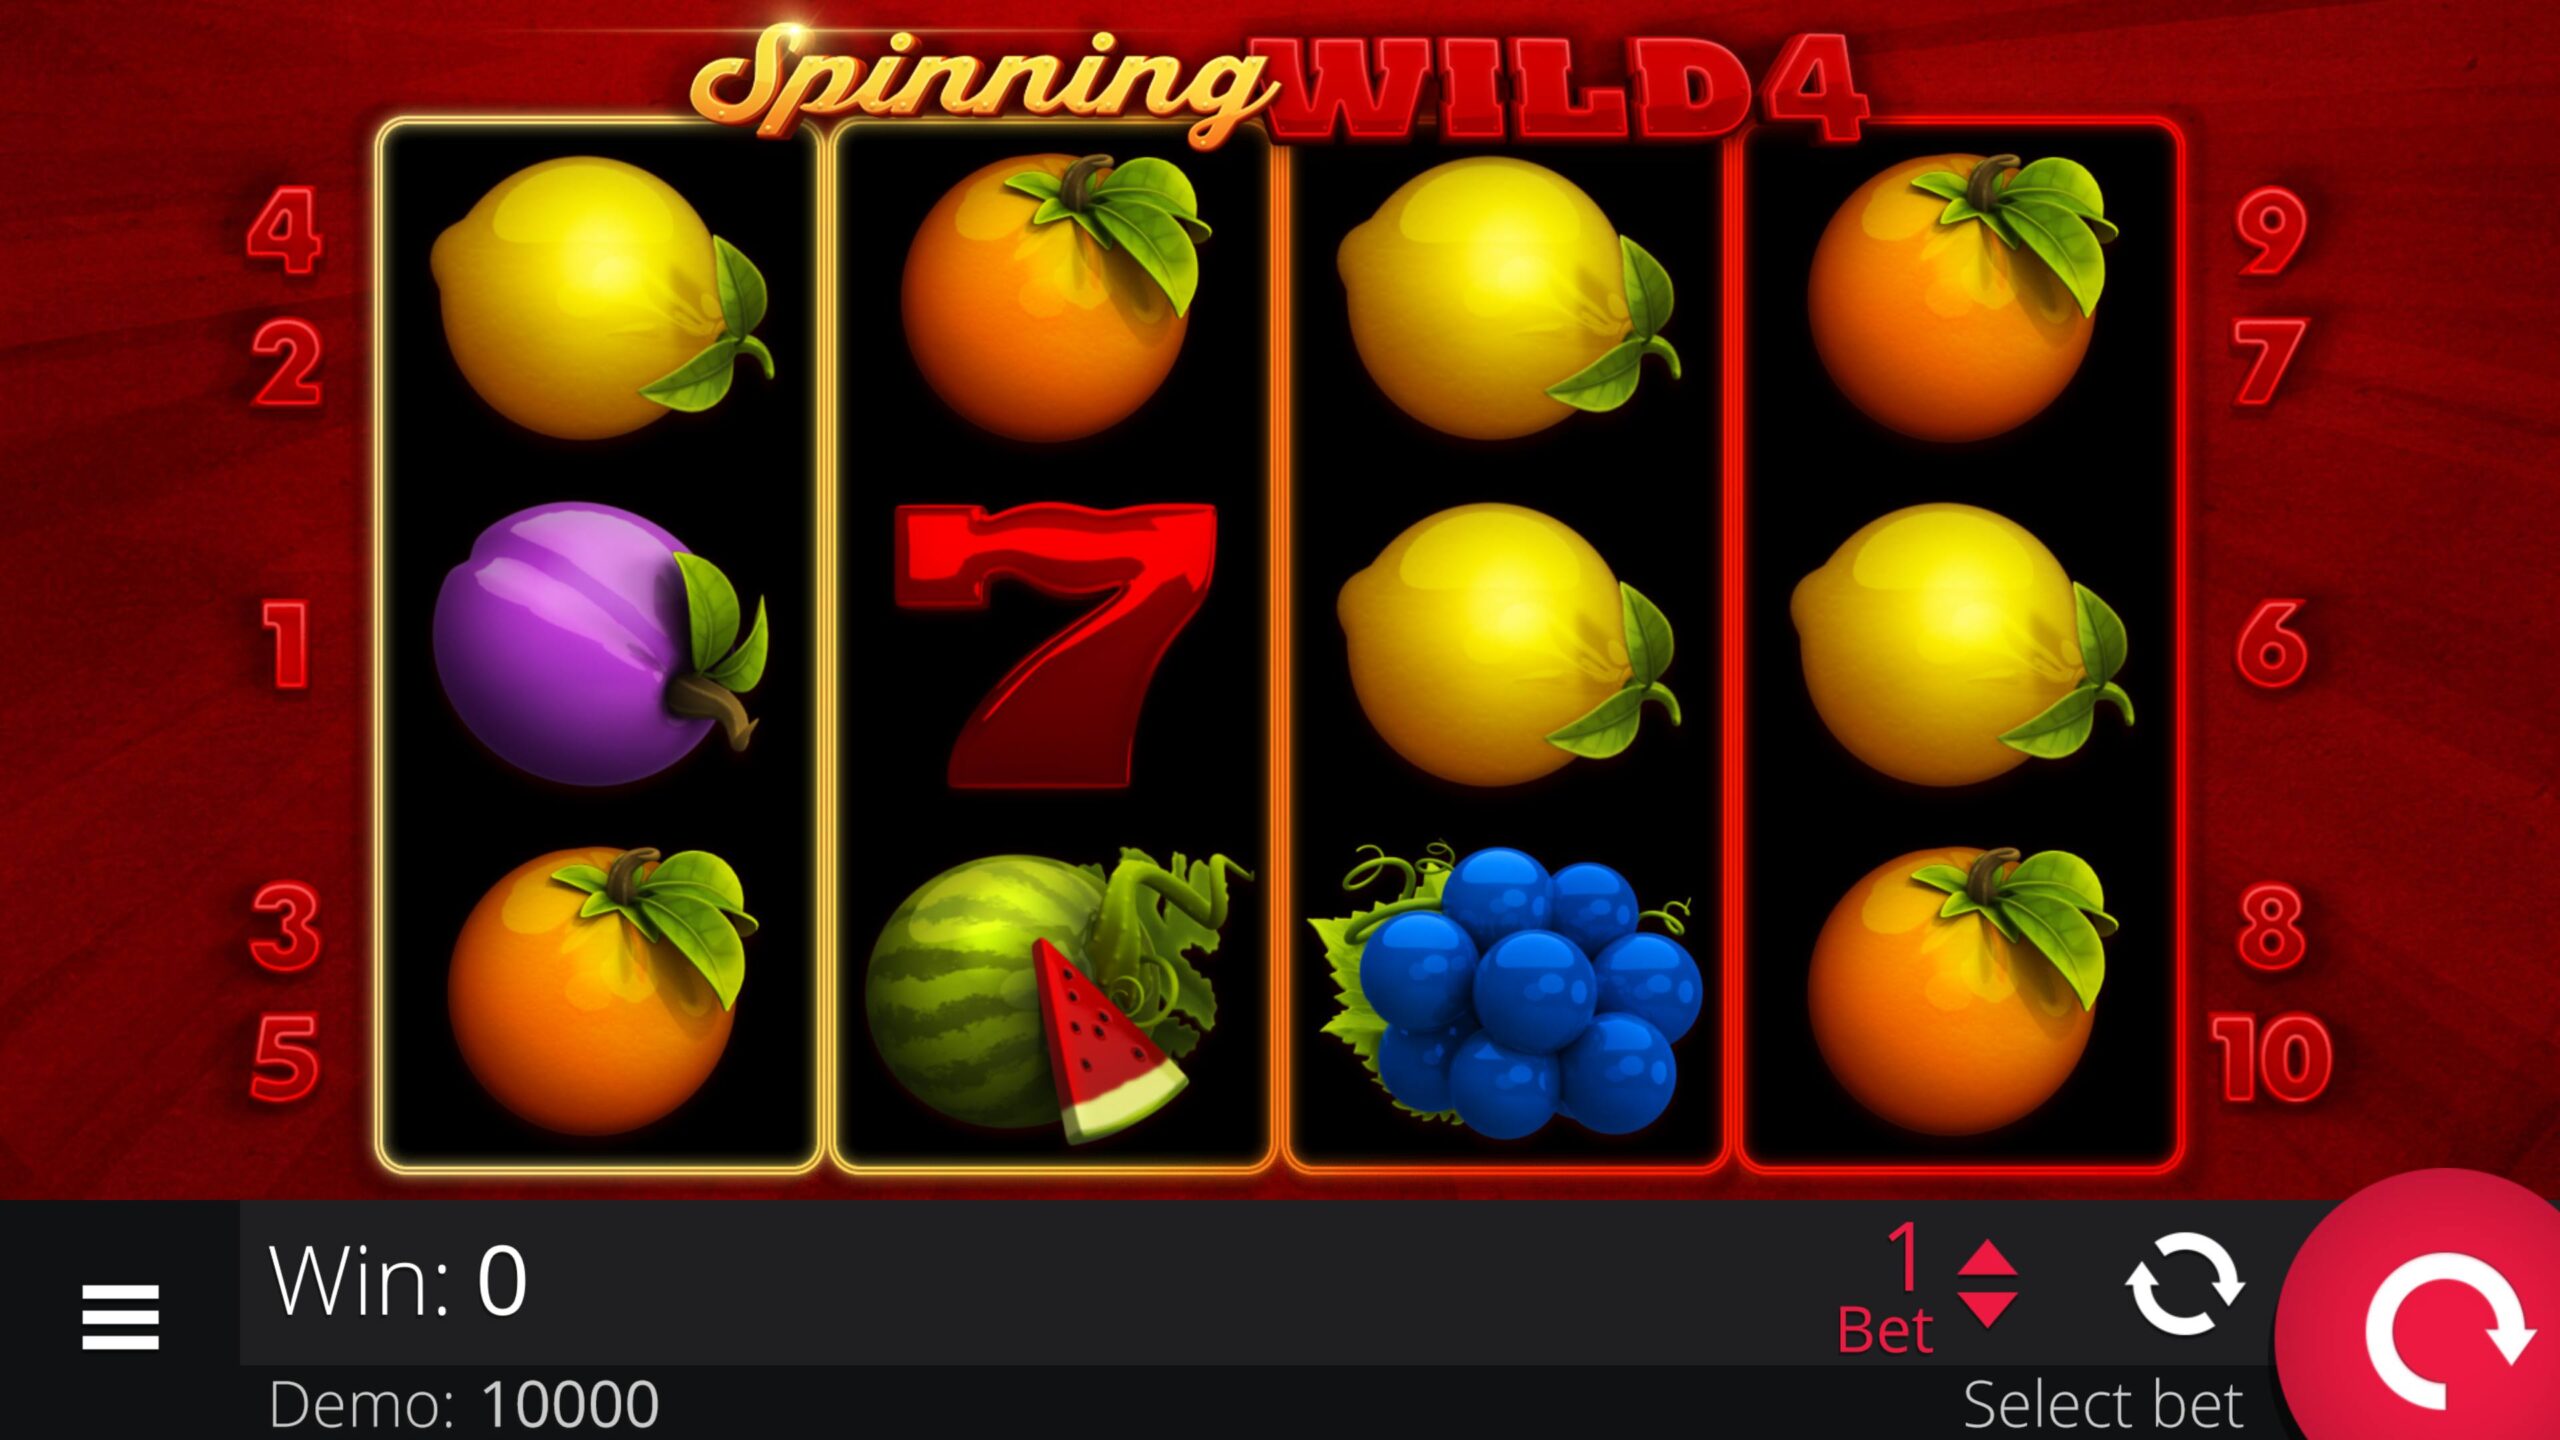 Spinning Wild 4, Egaming, Casino, Game